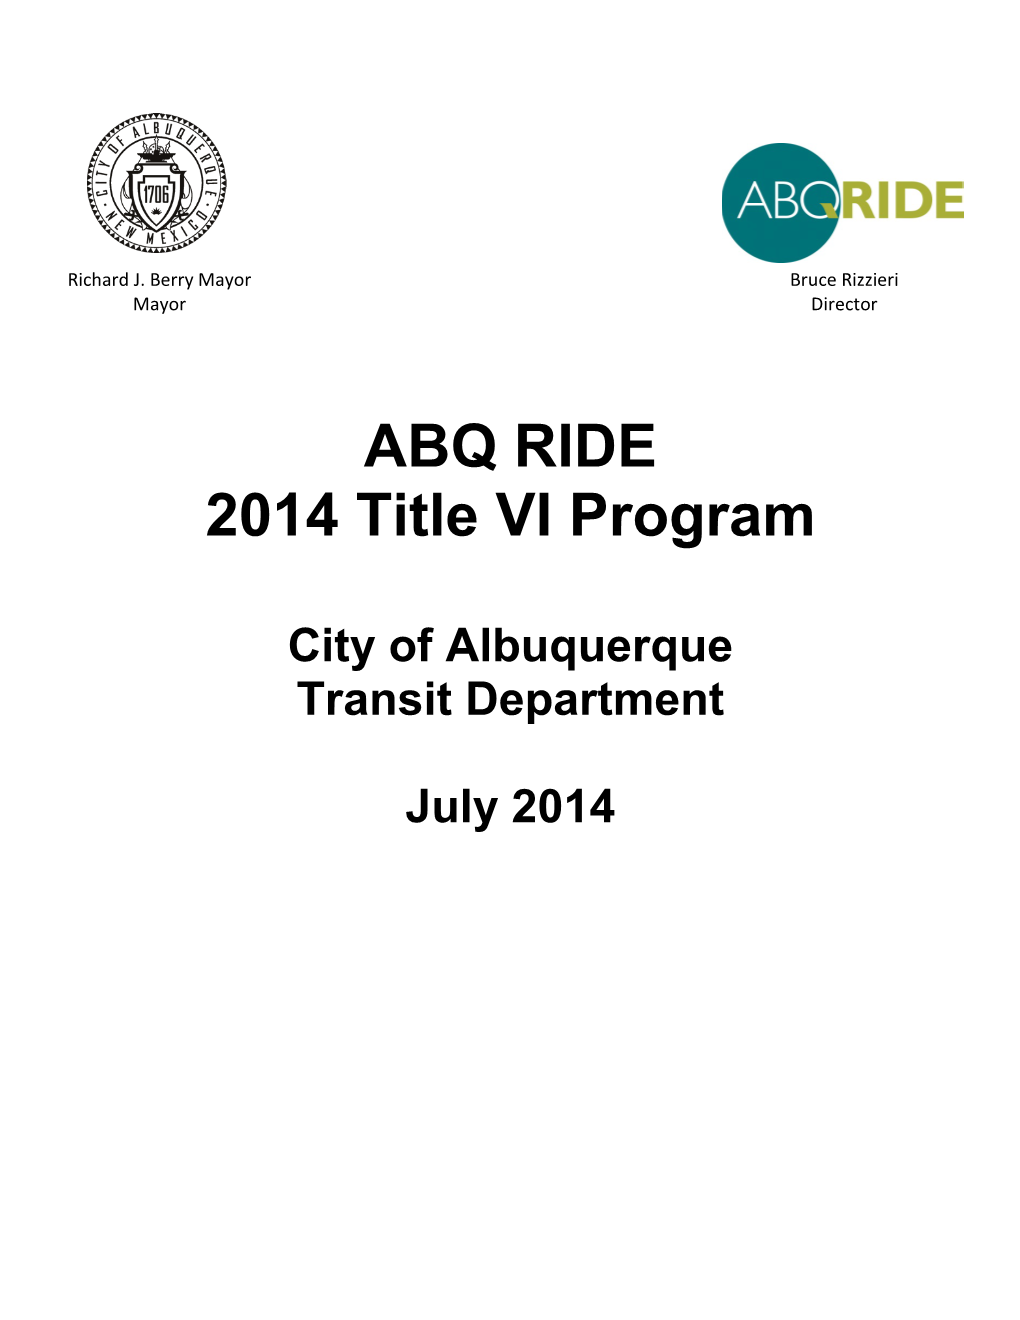 ABQ RIDE 2014 Title VI Program